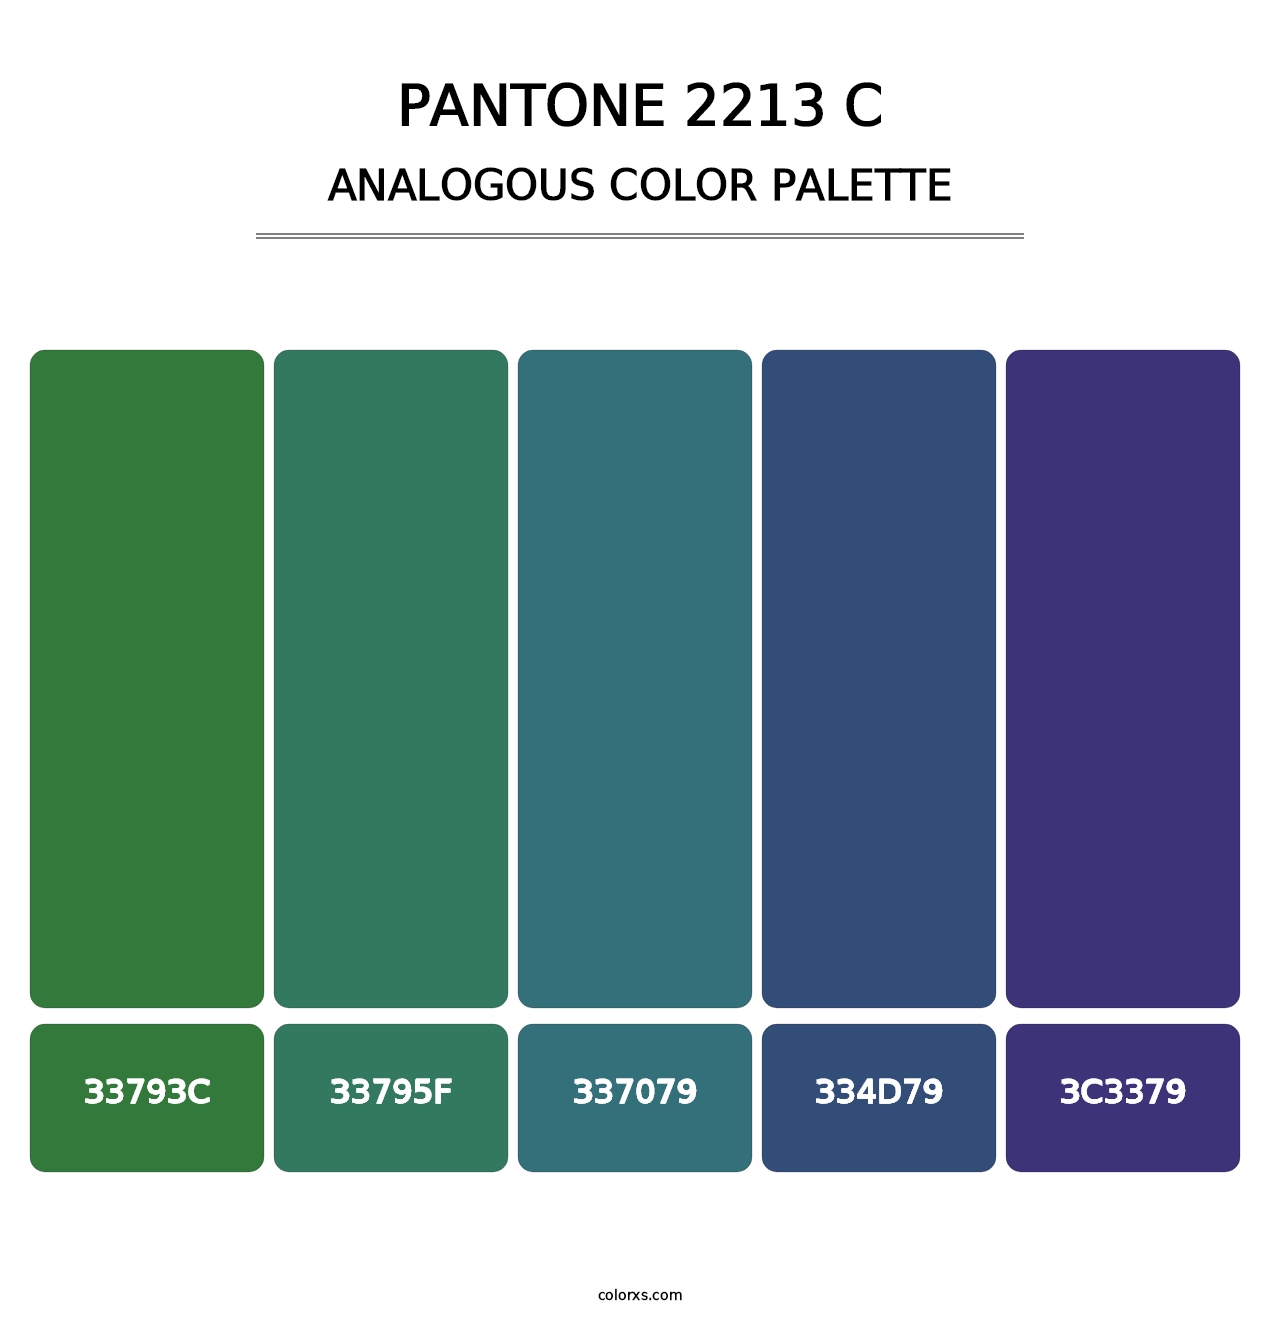 PANTONE 2213 C - Analogous Color Palette